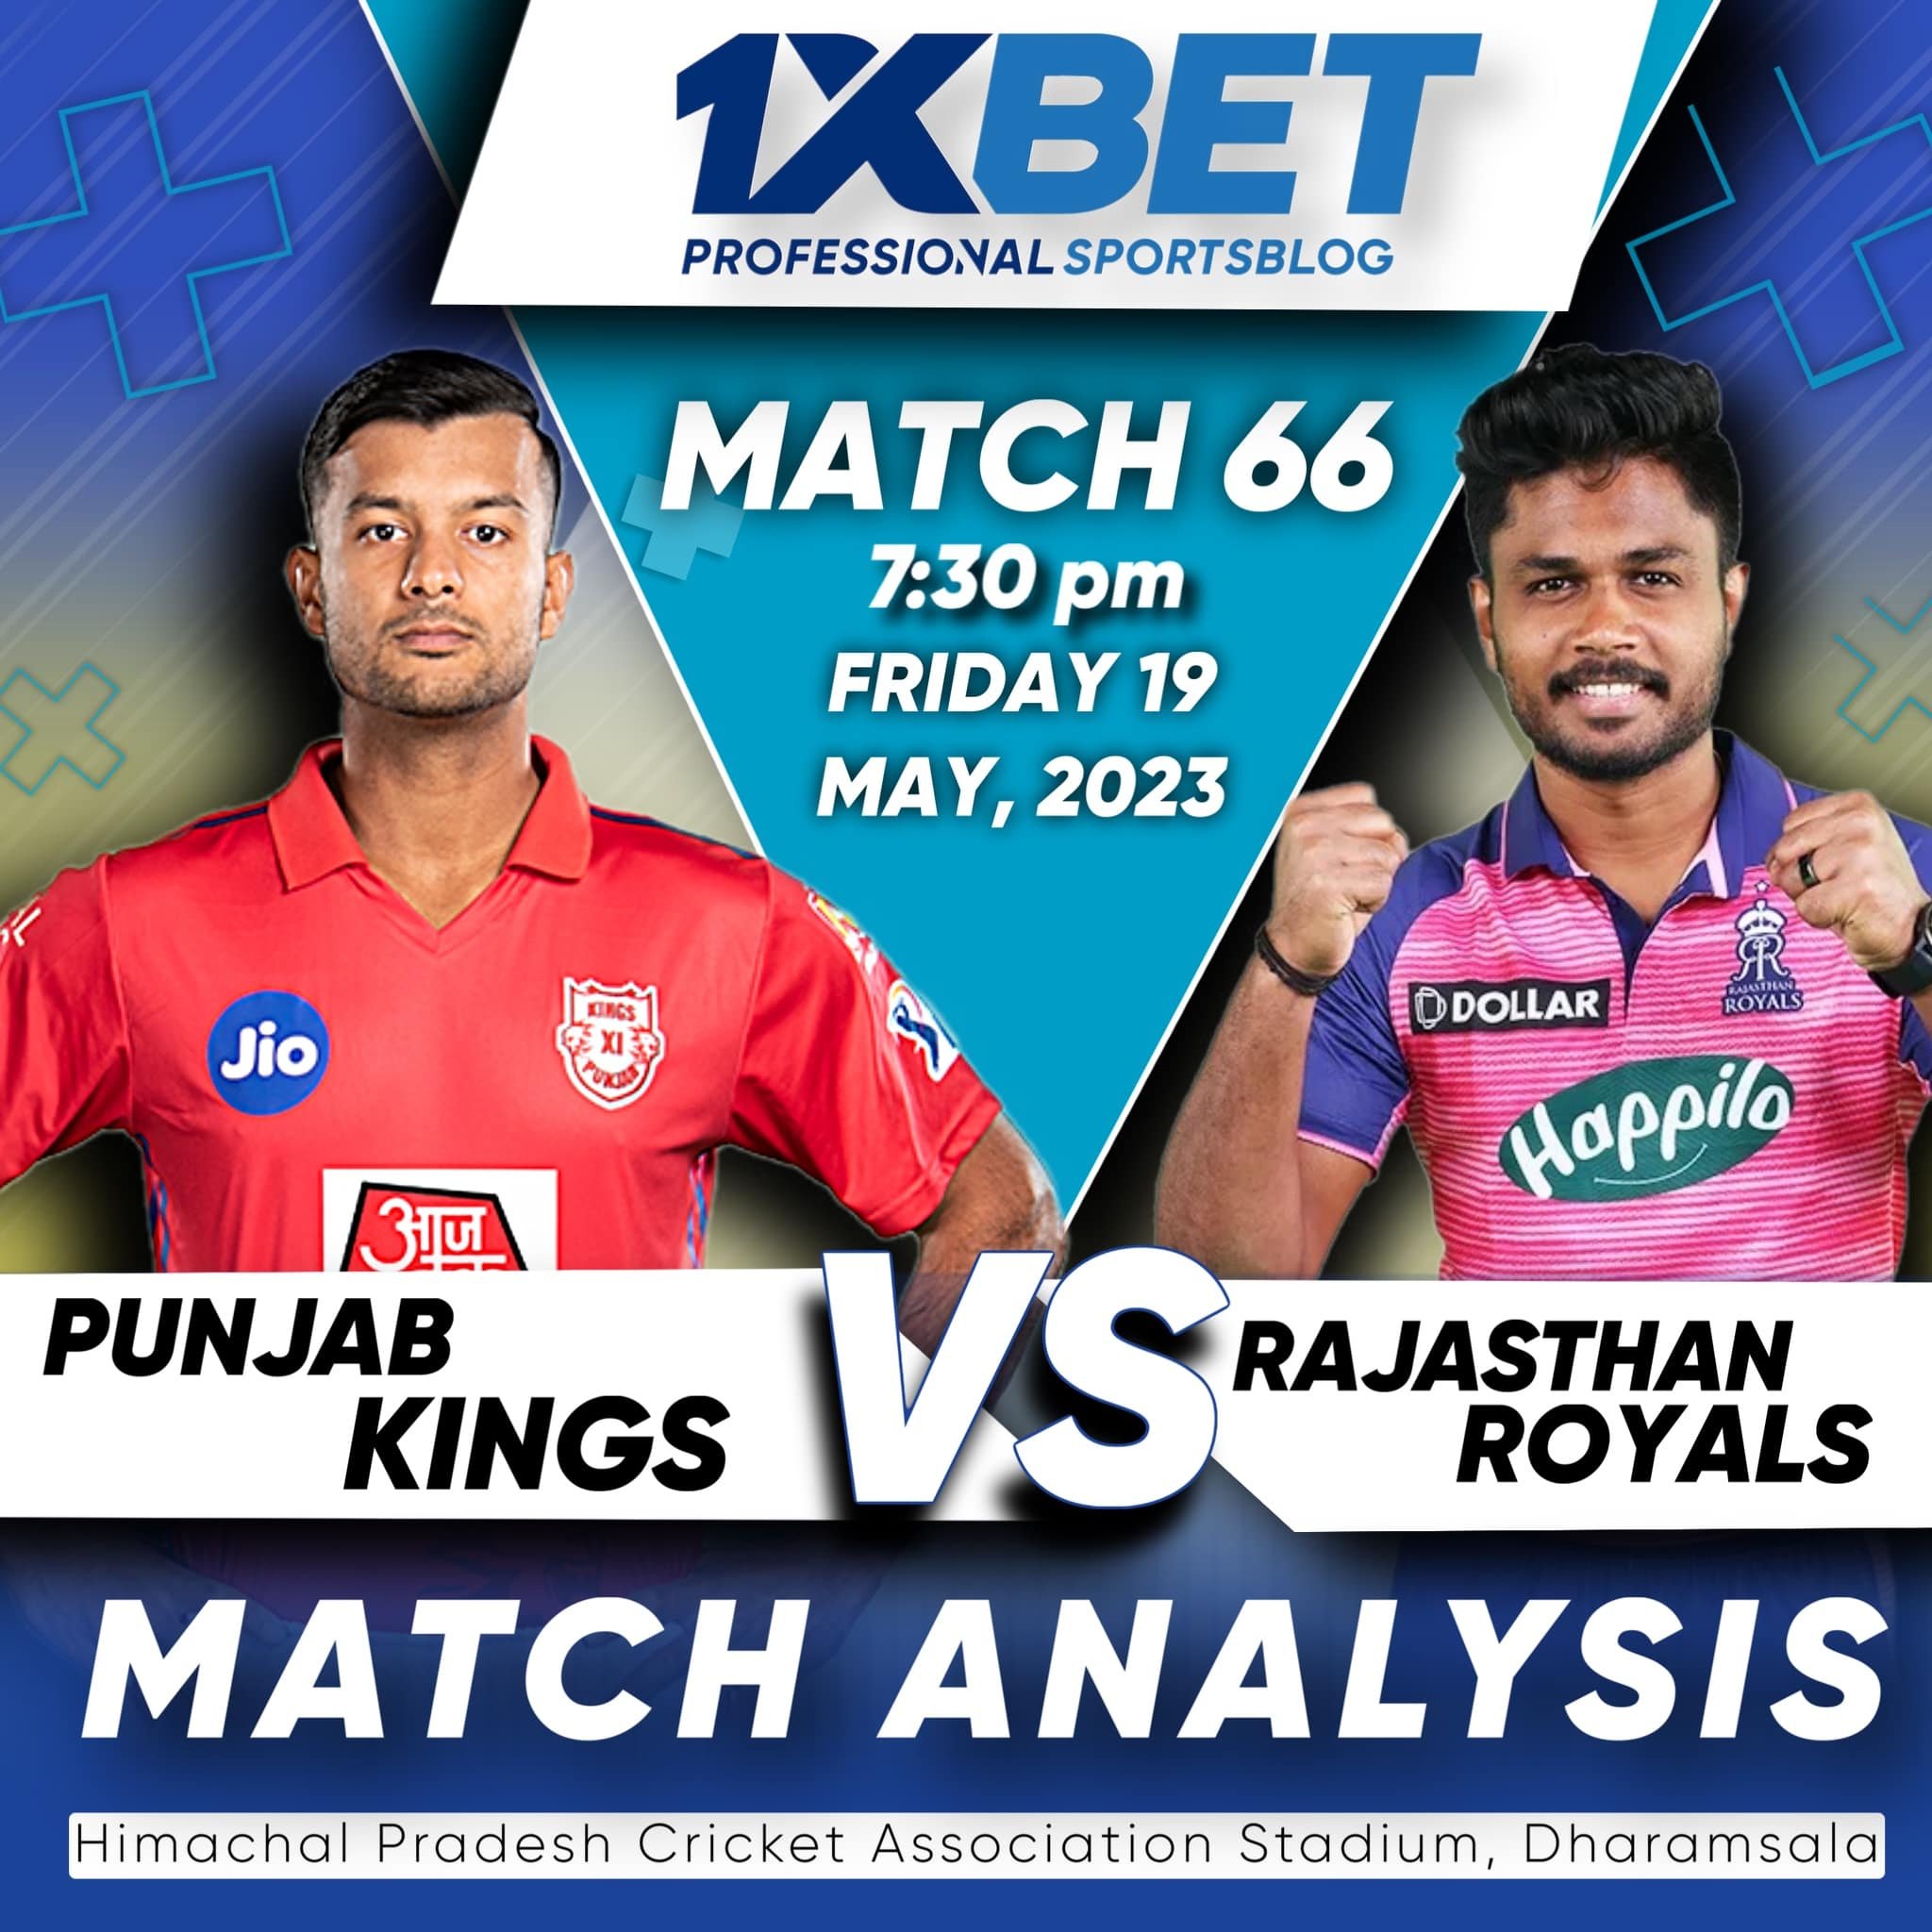 Punjab Kings vs Rajasthan Royals, IPL 2023, 66th Match Analysis